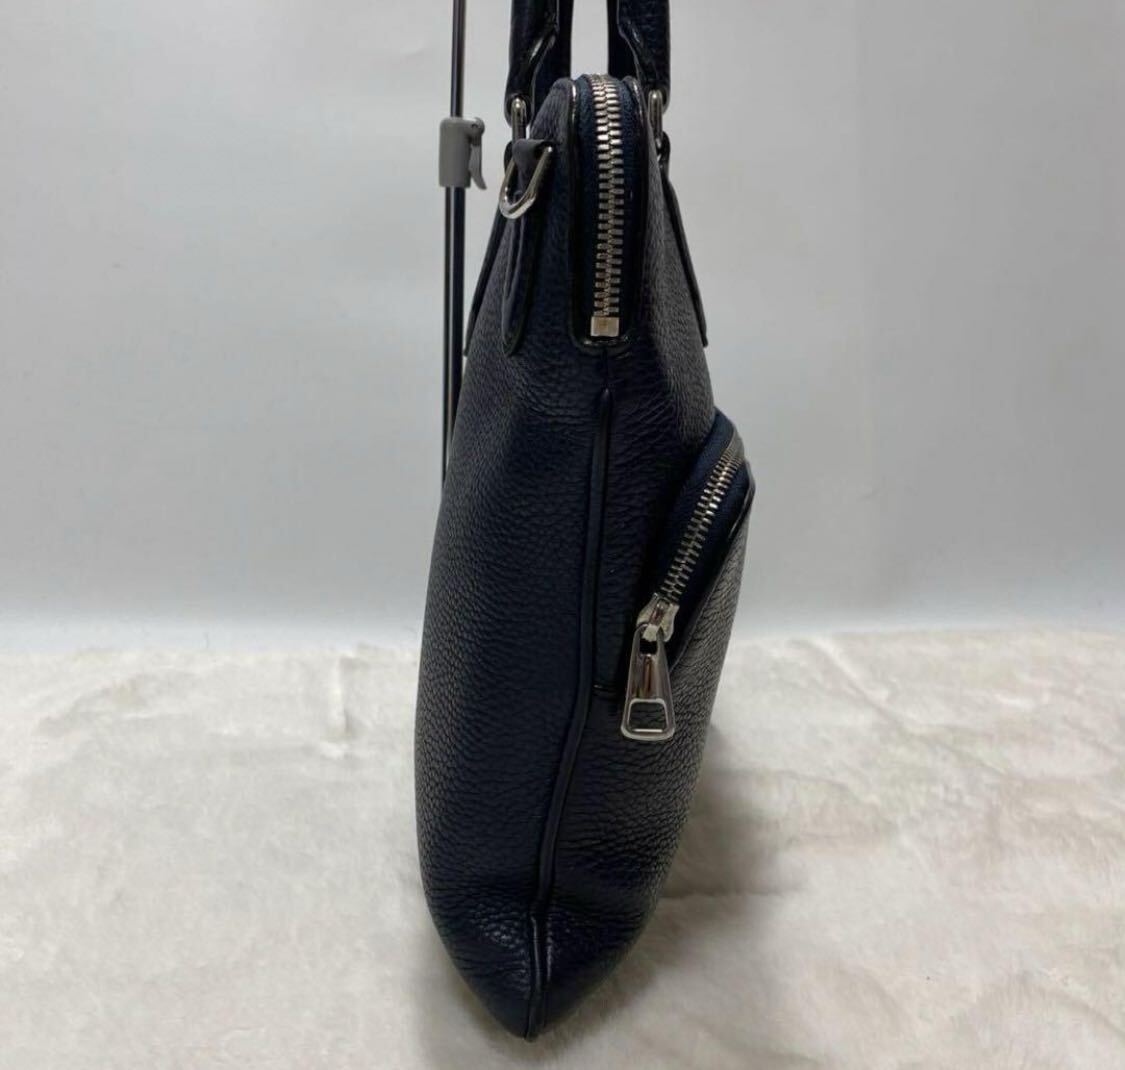  превосходный товар /A4 место хранения возможно / новое время модель /BALLY Bally мужской портфель большая сумка портфель все кожа морщина кожа темно-синий темно-синий цвет ходить на работу 